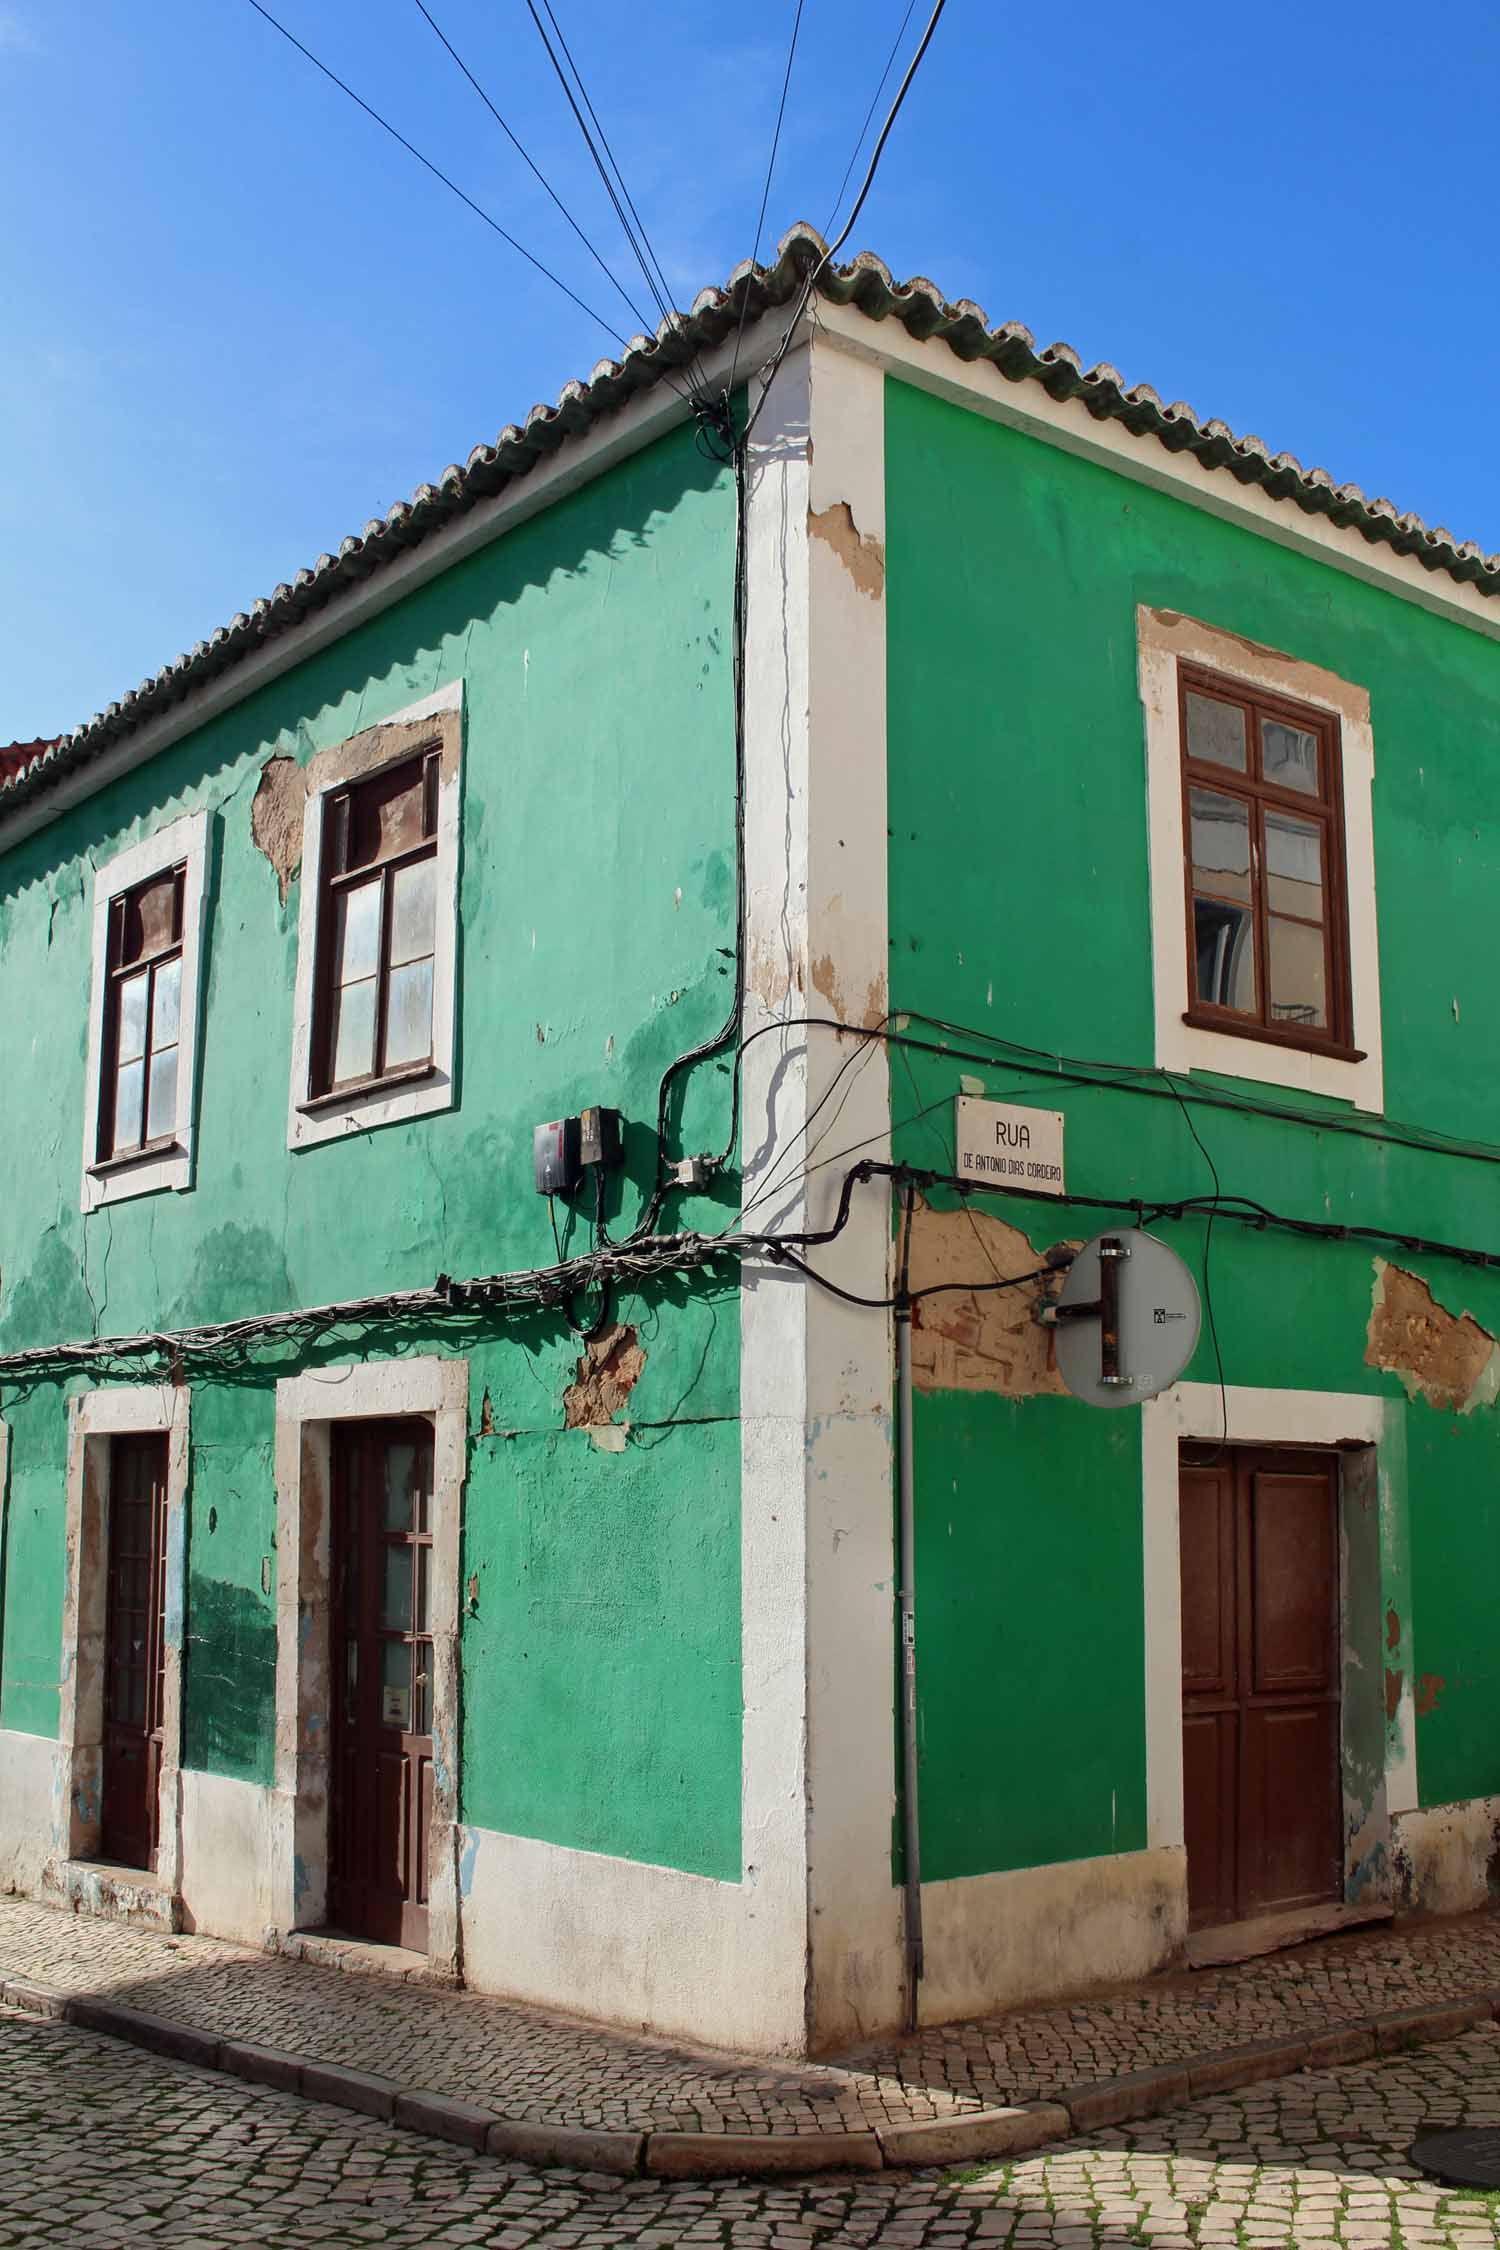 Portimao, maison verte